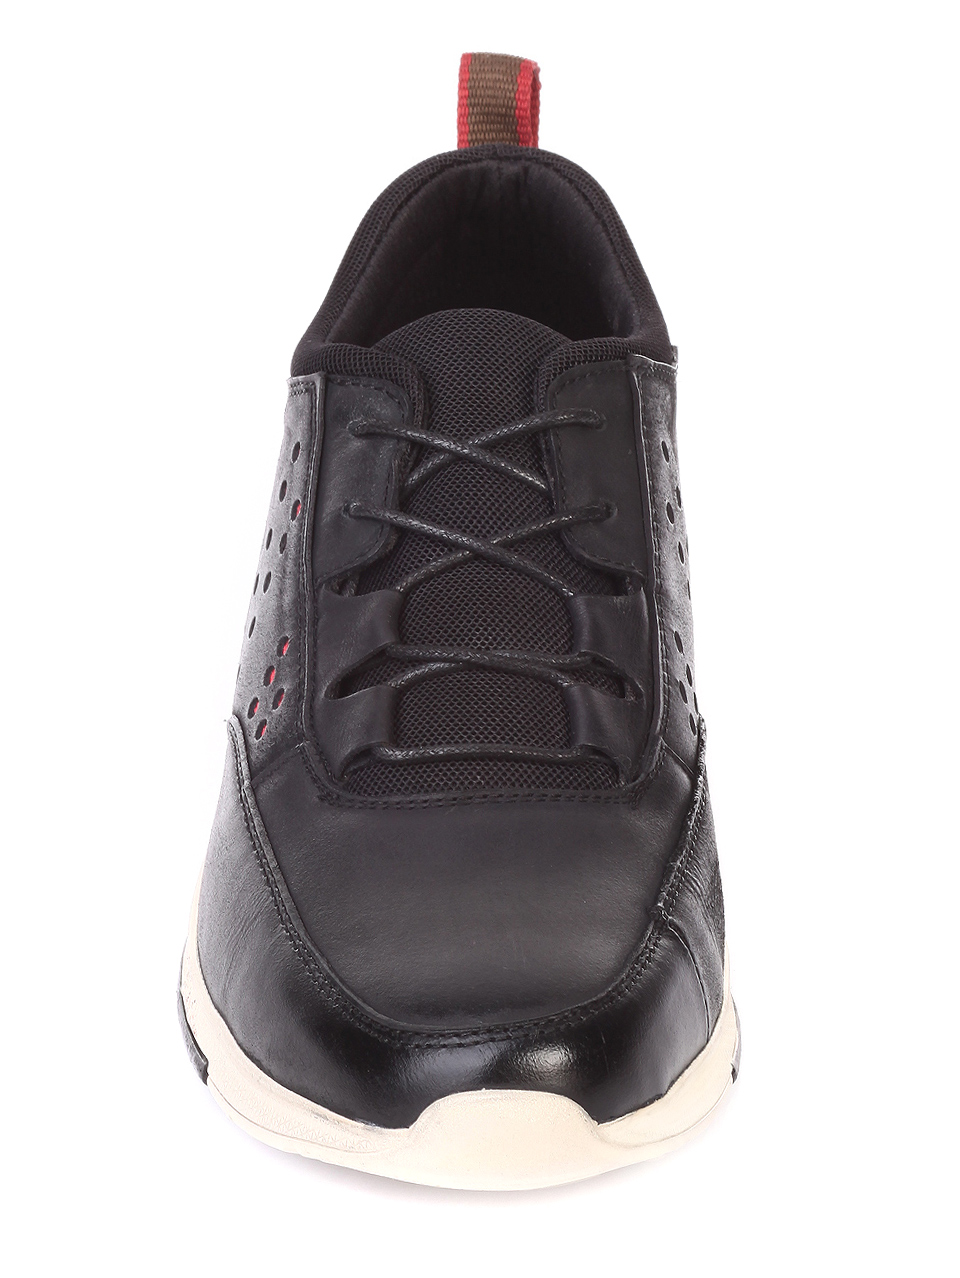 Ежедневни мъжки обувки от естествена кожа 7X-19723 black 